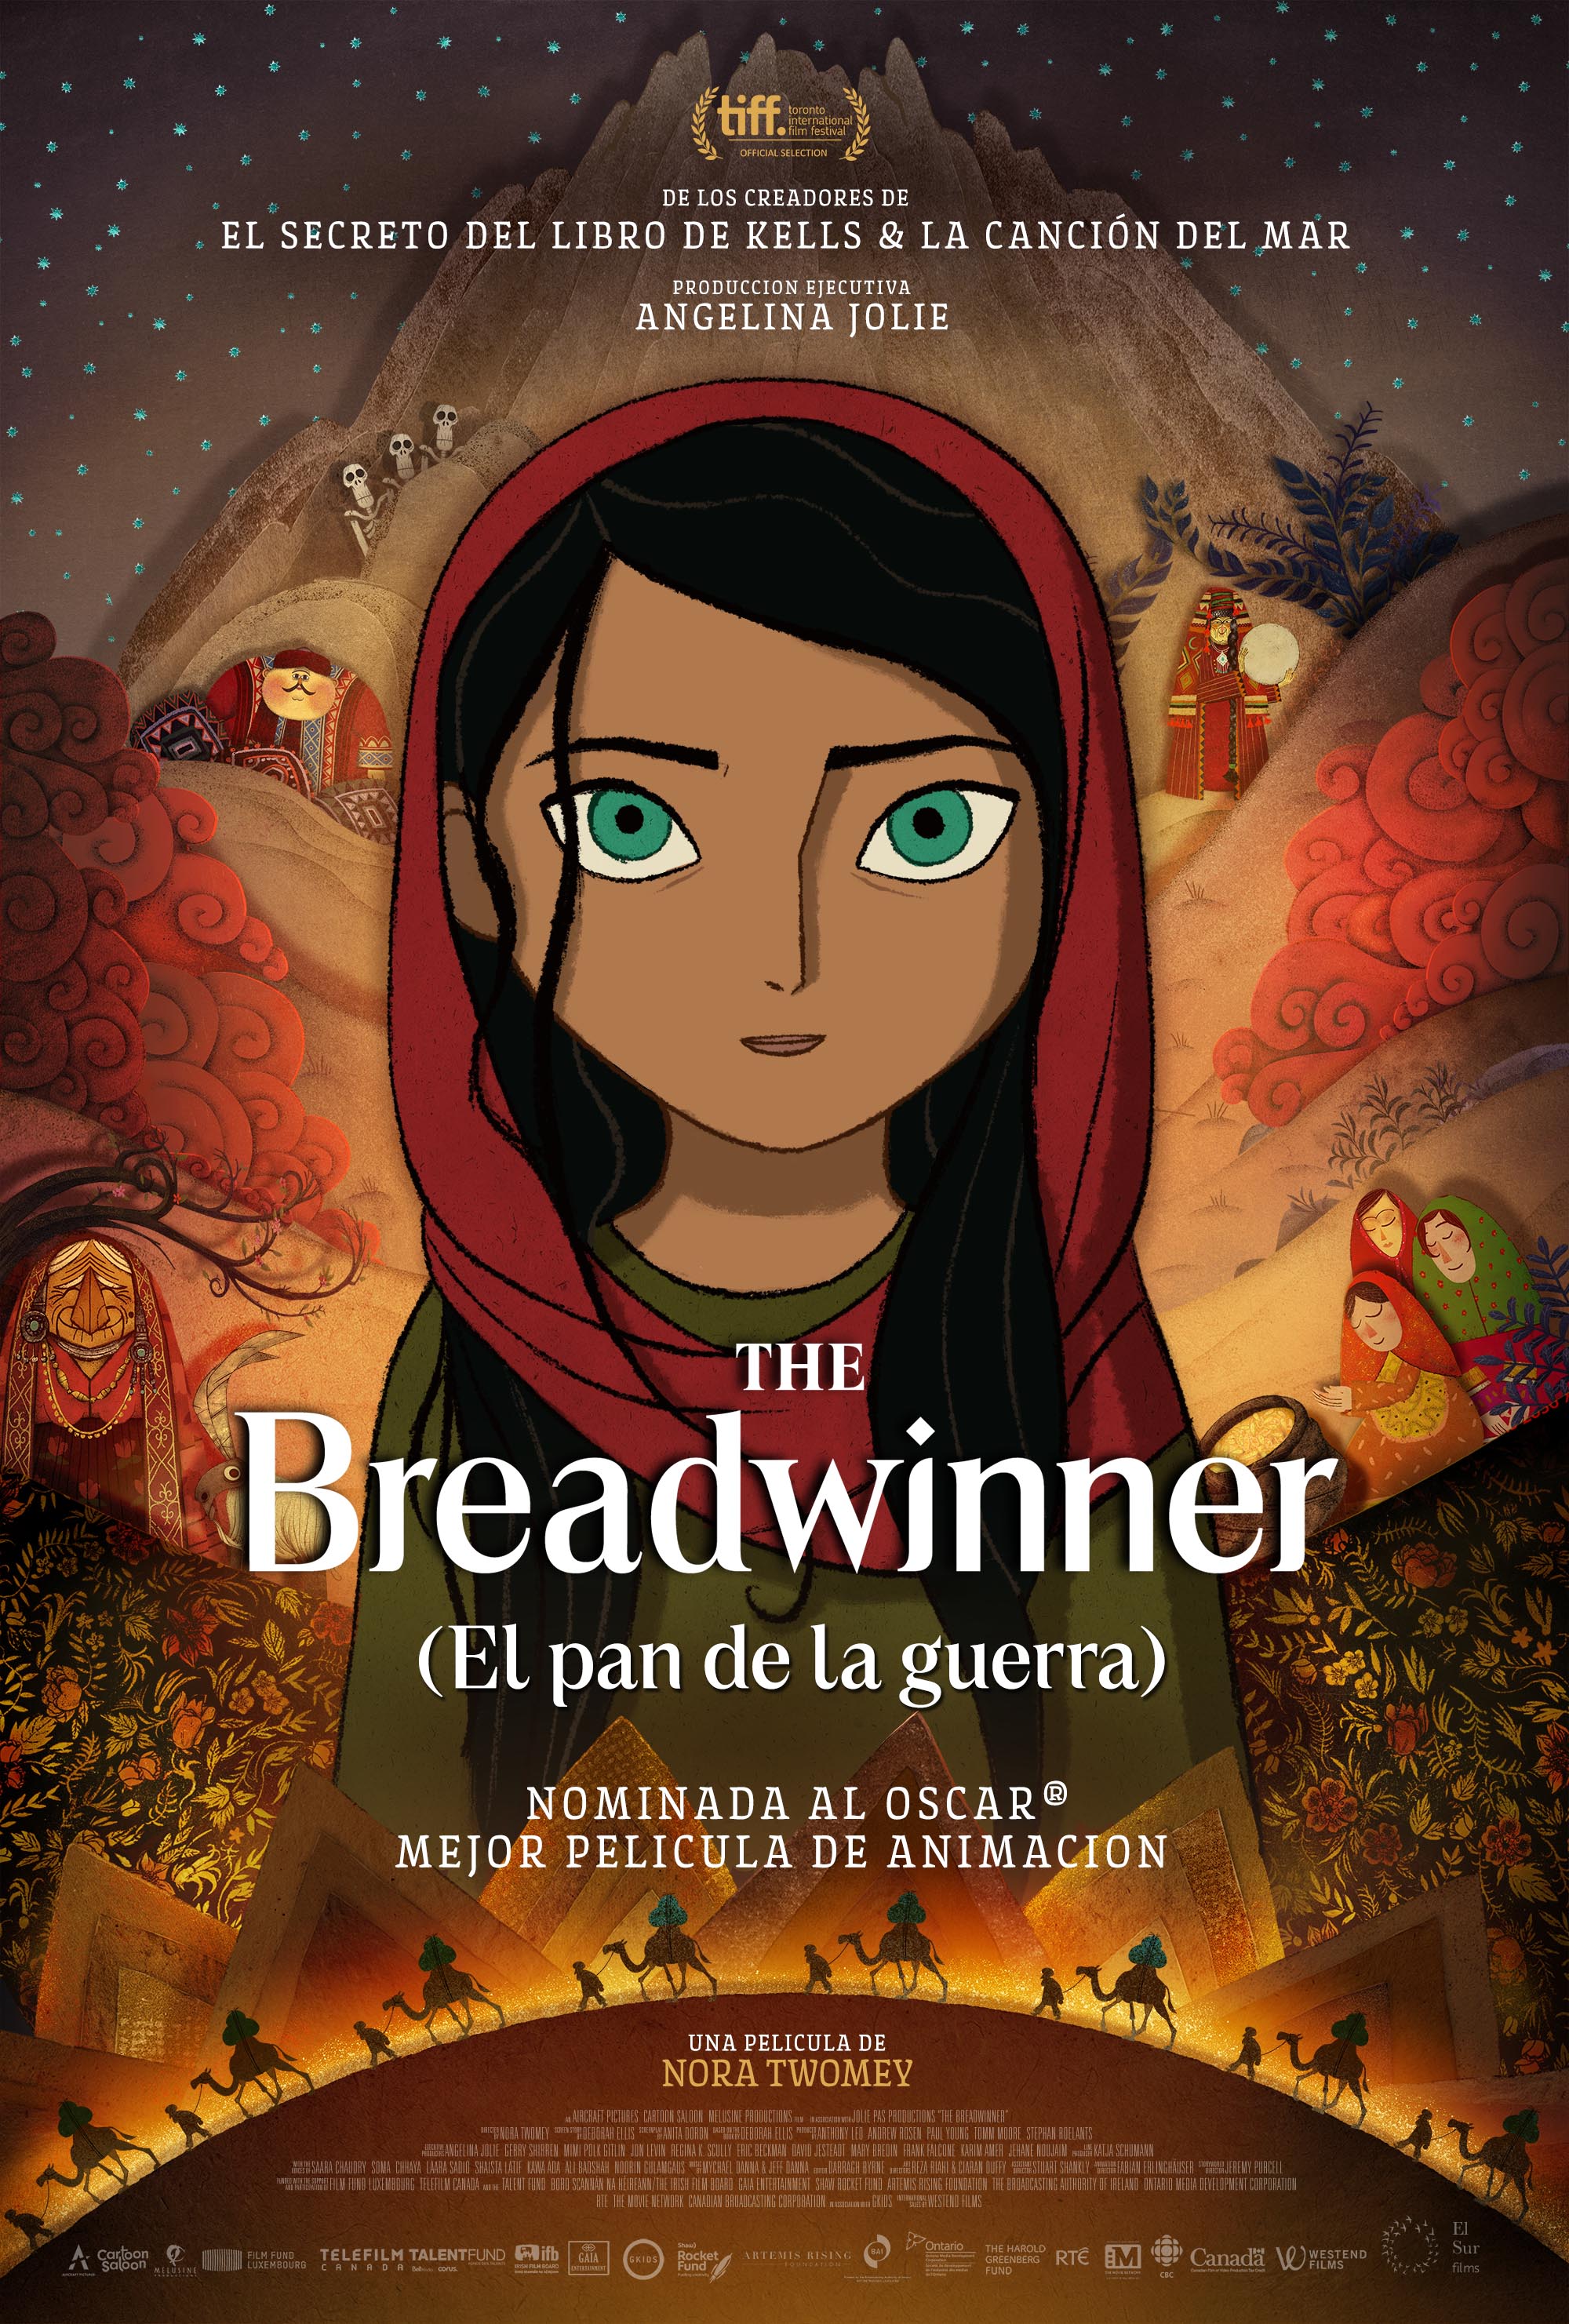 ⭒ The Breadwinner (El pan de la guerra)